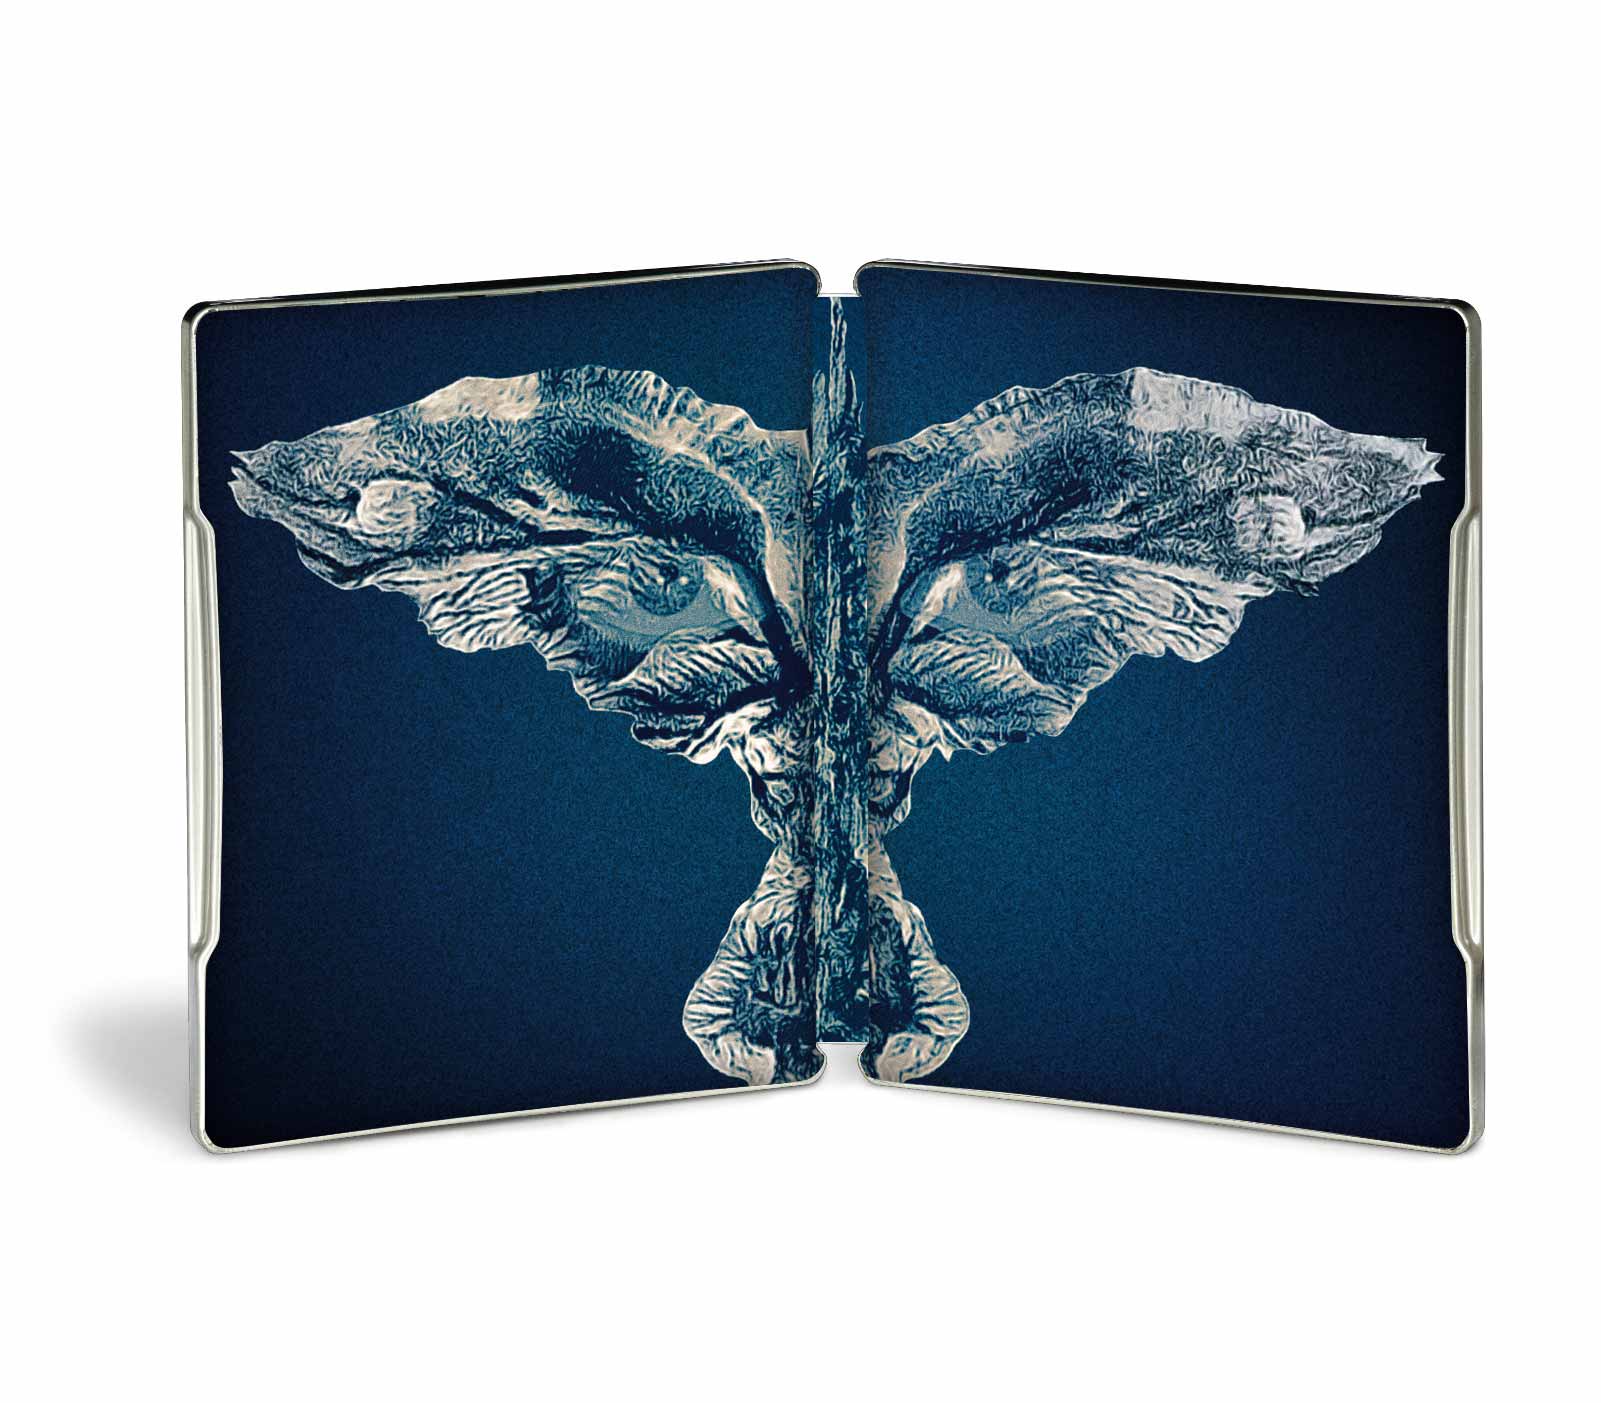 Il Corvo - Steelbook Blu 4K Ultra HD + Blu-ray - Edizione 30° Anniversario (Blu-ray) Image 4